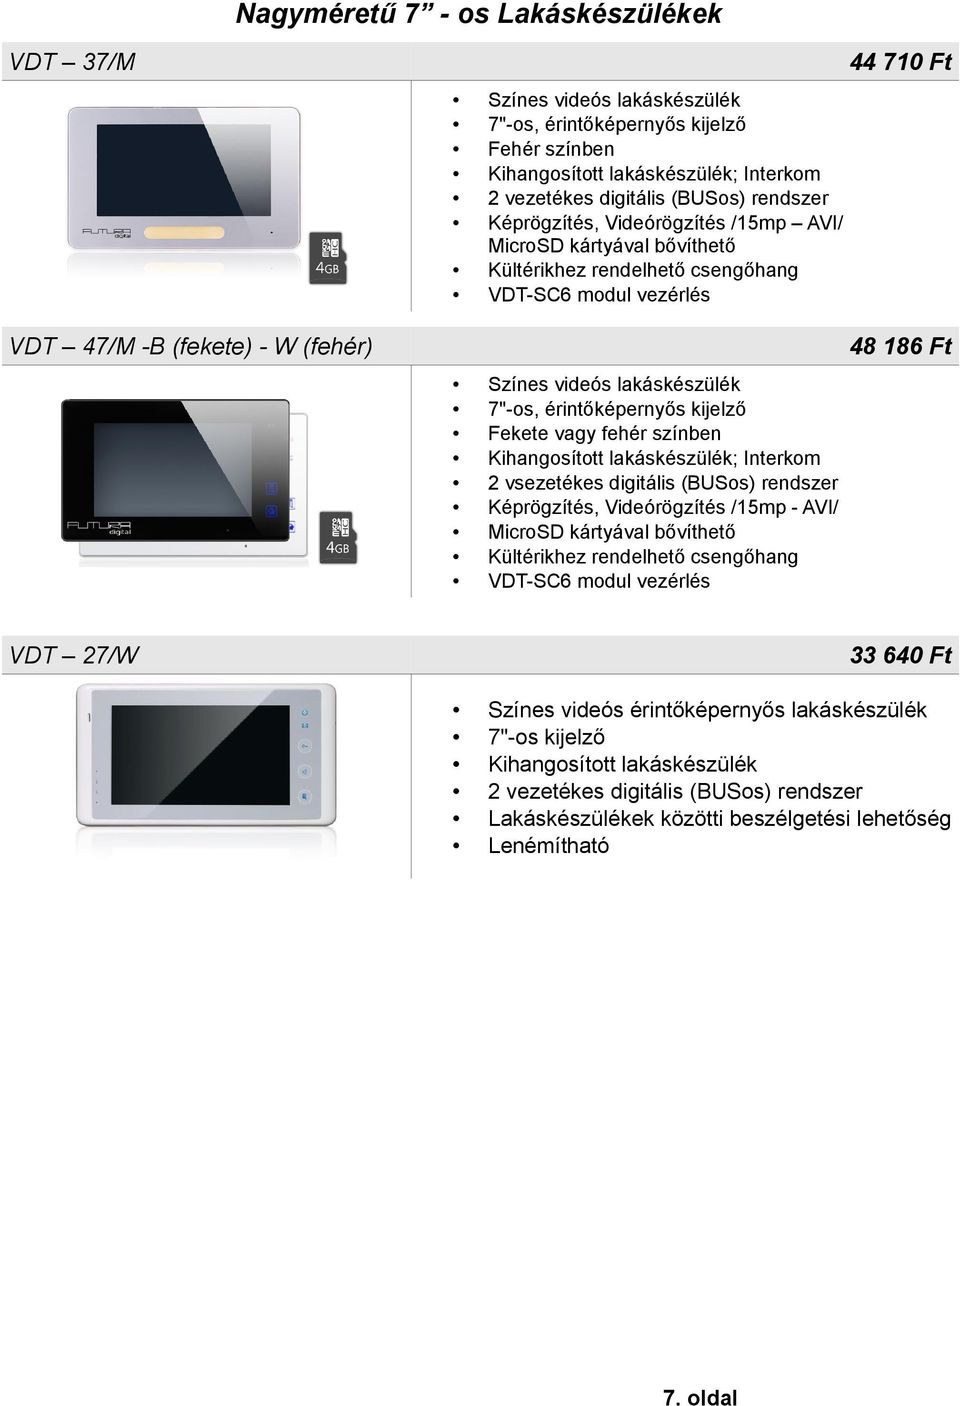 fehér színben Kihangosított lakáskészülék; Interkom 2 vsezetékes digitális (BUSos) rendszer Képrögzítés, Videórögzítés /15mp - AVI/ MicroSD kártyával bővíthető Kültérikhez rendelhető csengőhang